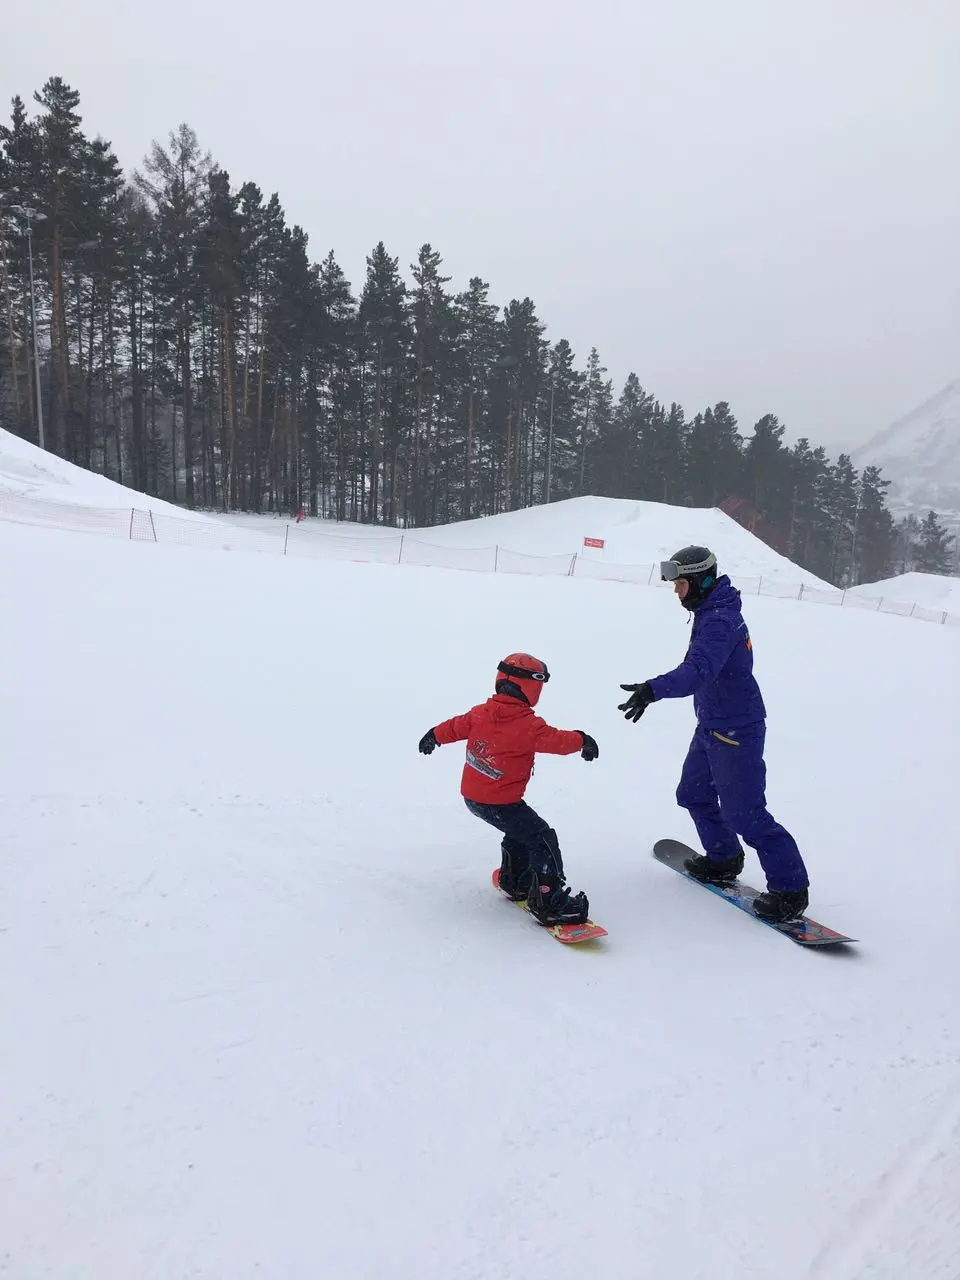 Обучение катанию на сноуборде